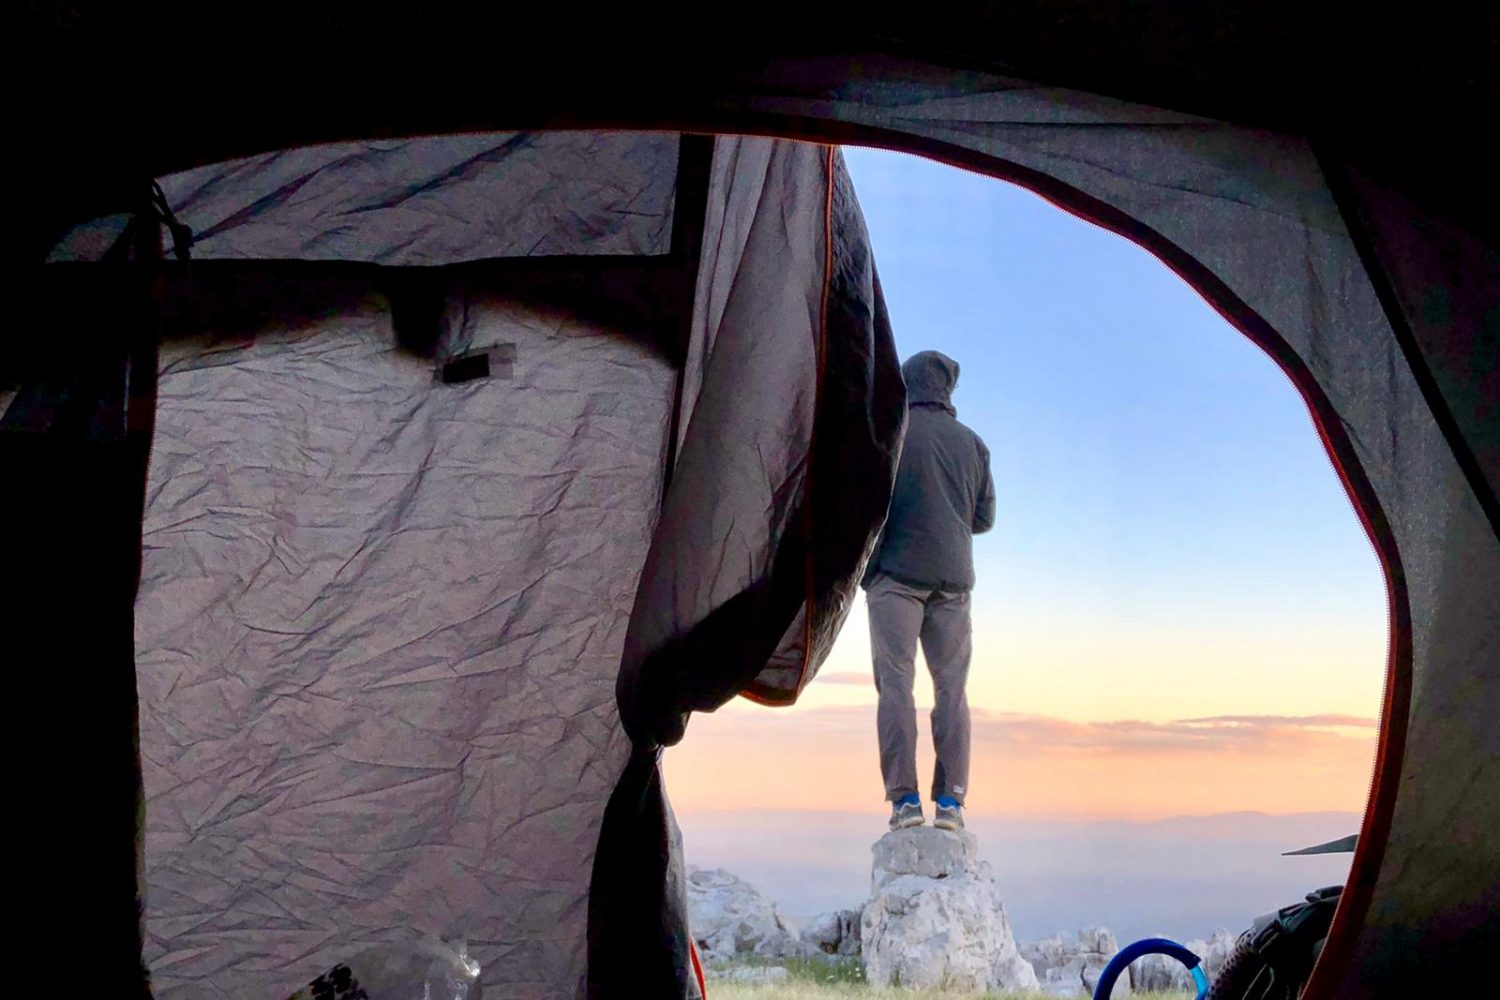 personne posant à l'aube face à un paysage panoramique, vue d'une tente